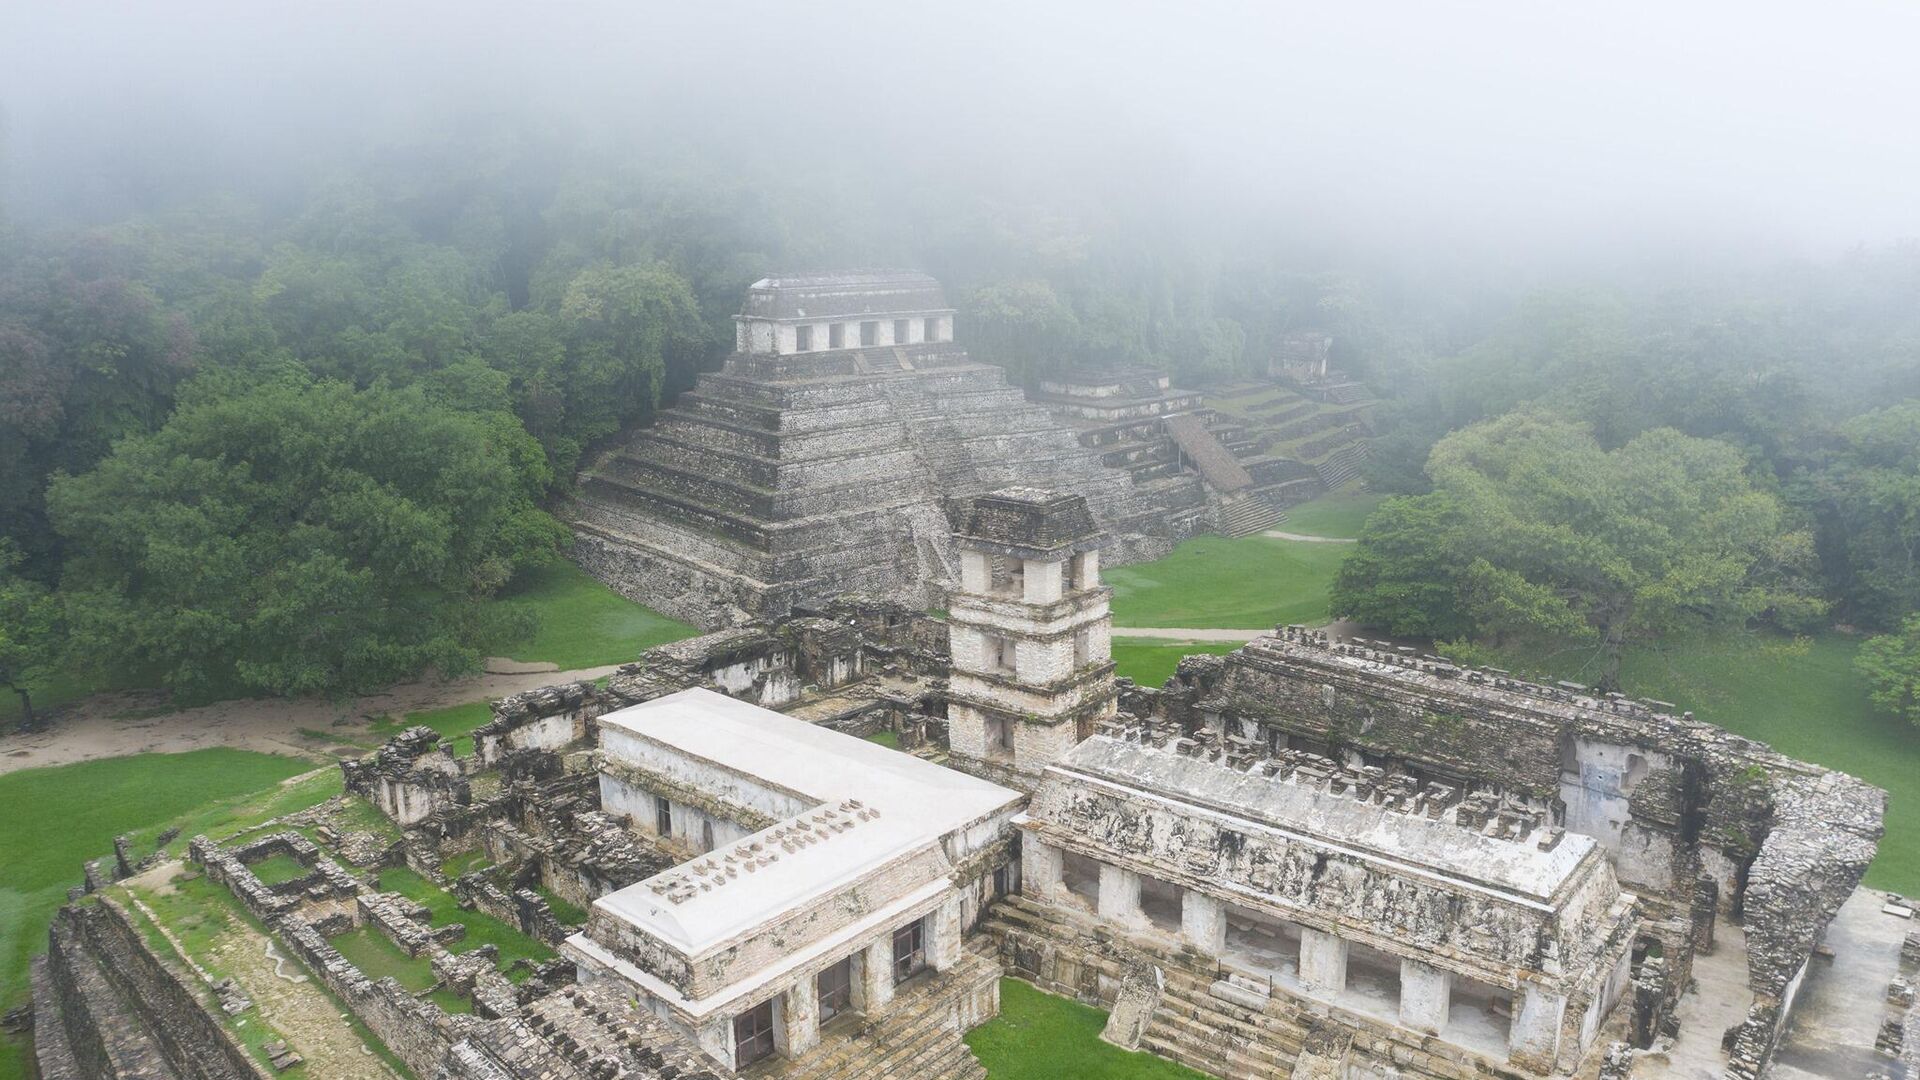 La ciudad maya de Palenque, ubicada en la región donde se desarrolla el Tren Maya. - Sputnik Mundo, 1920, 20.12.2021